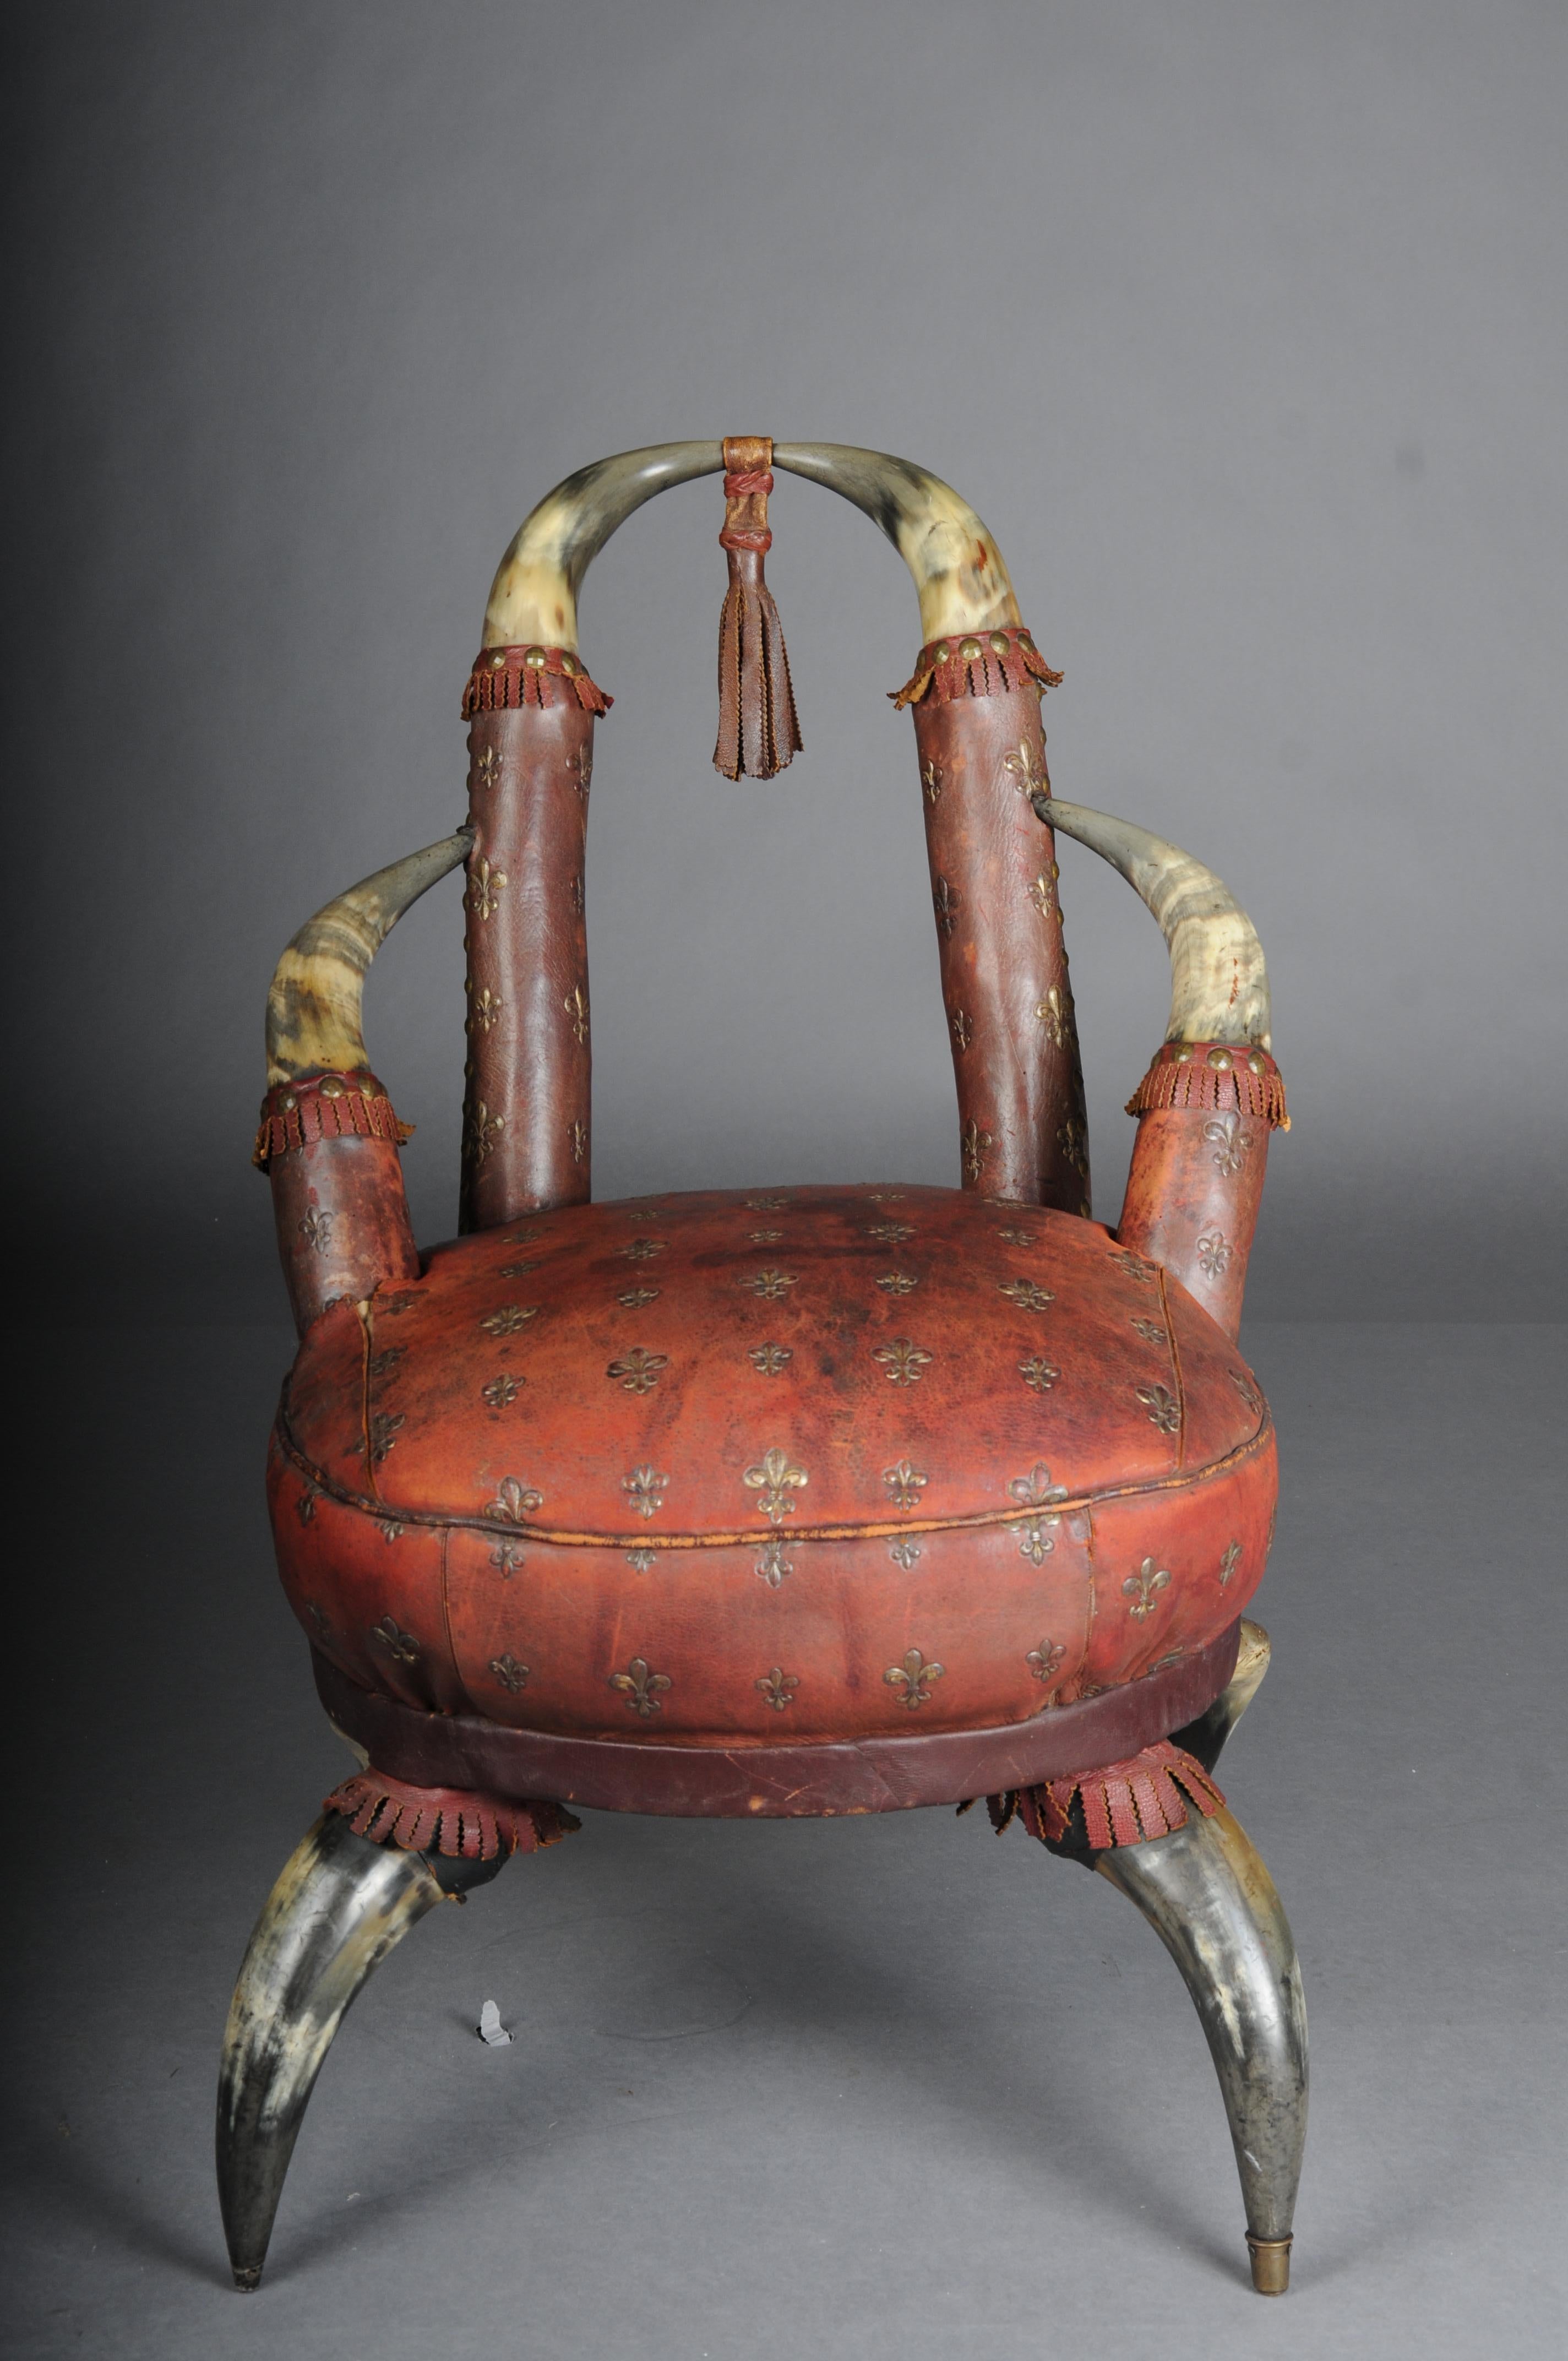 Chaise en corne ancienne de qualité muséale Victoria vers 1870.

Extravagante chaise antique en corne, probablement en Angleterre.

Housse de siège avec padding à base de ressorts, recouverte de cuir de vachette véritable. Siège parsemé de lys